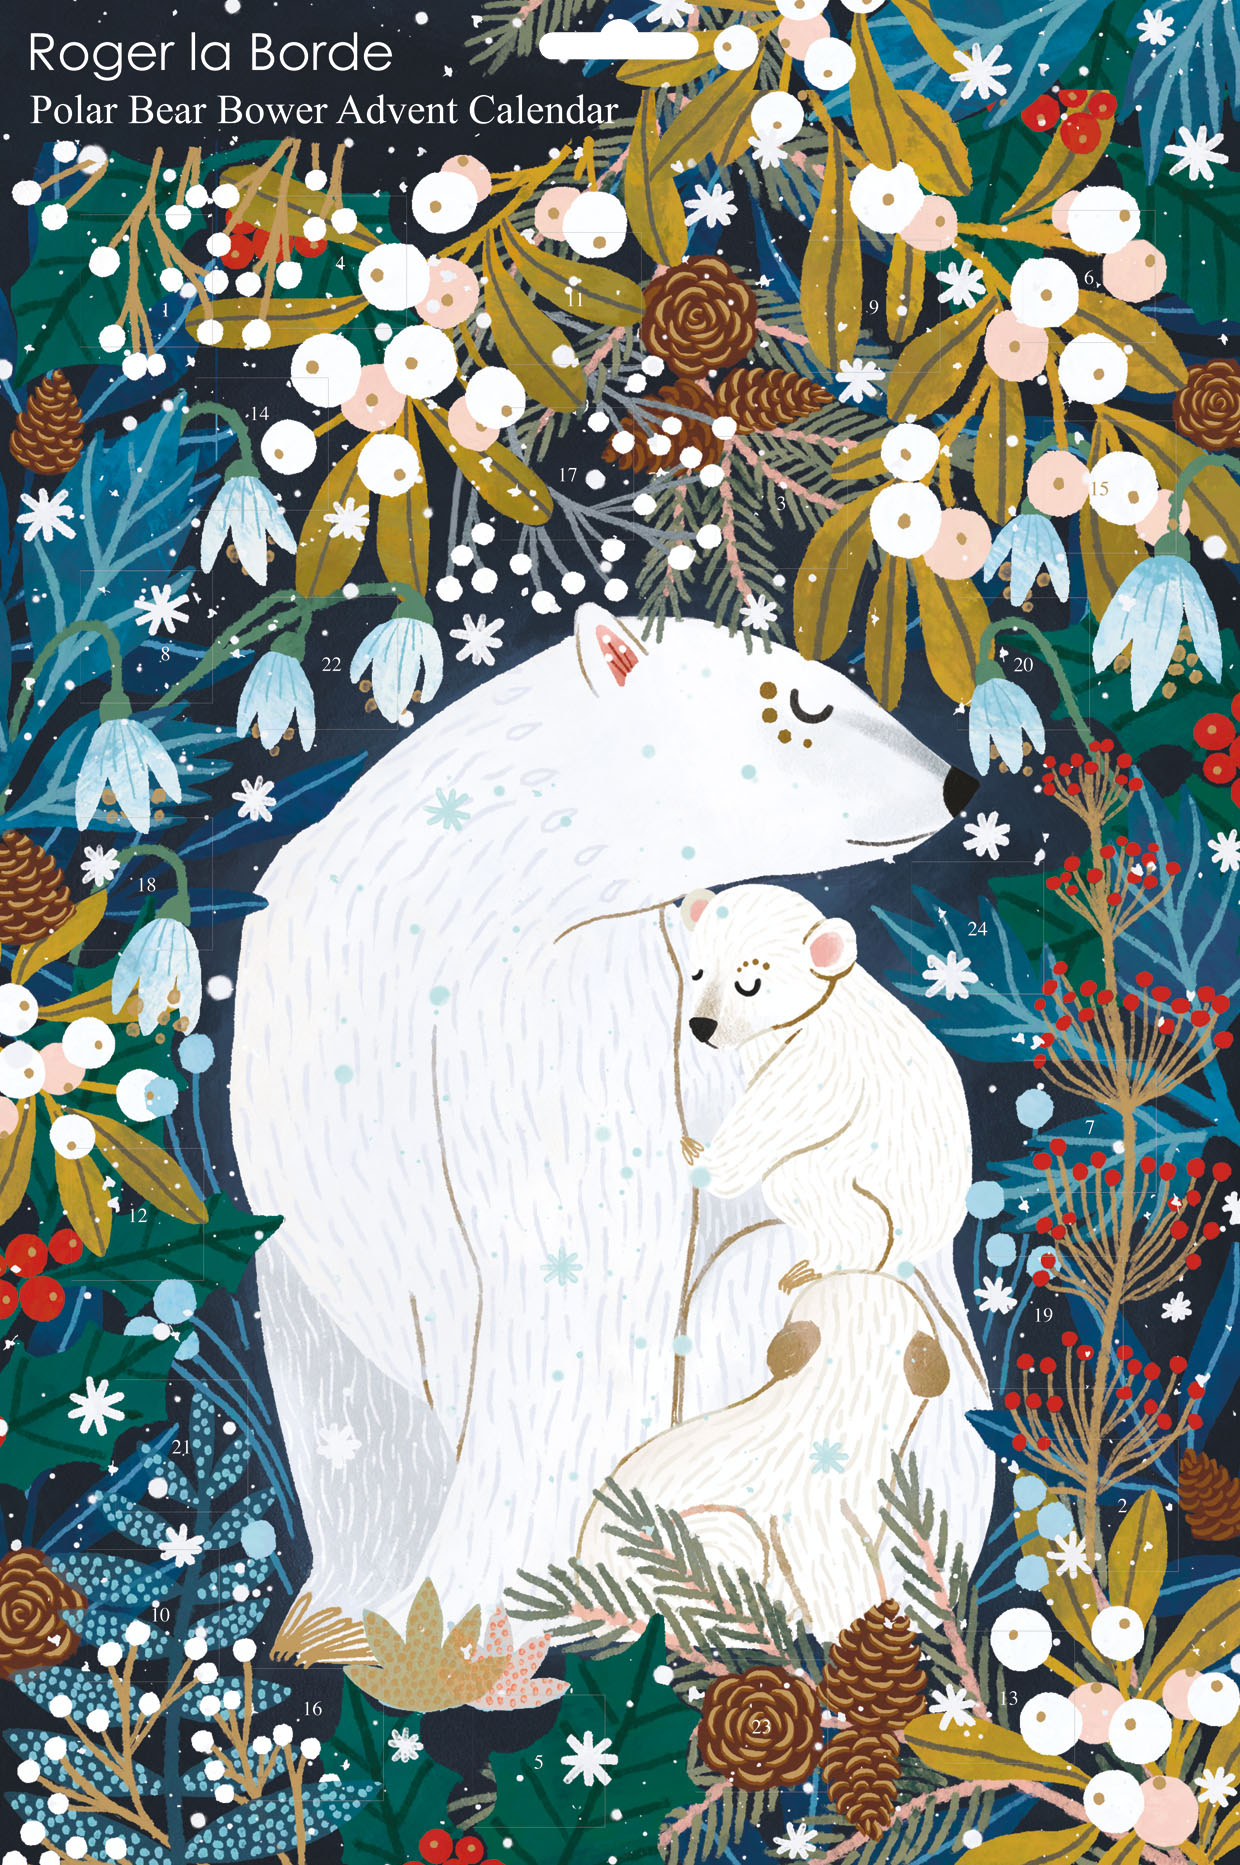 Adventi naptár poszter, Polar Bear Bower - Roger la Borde